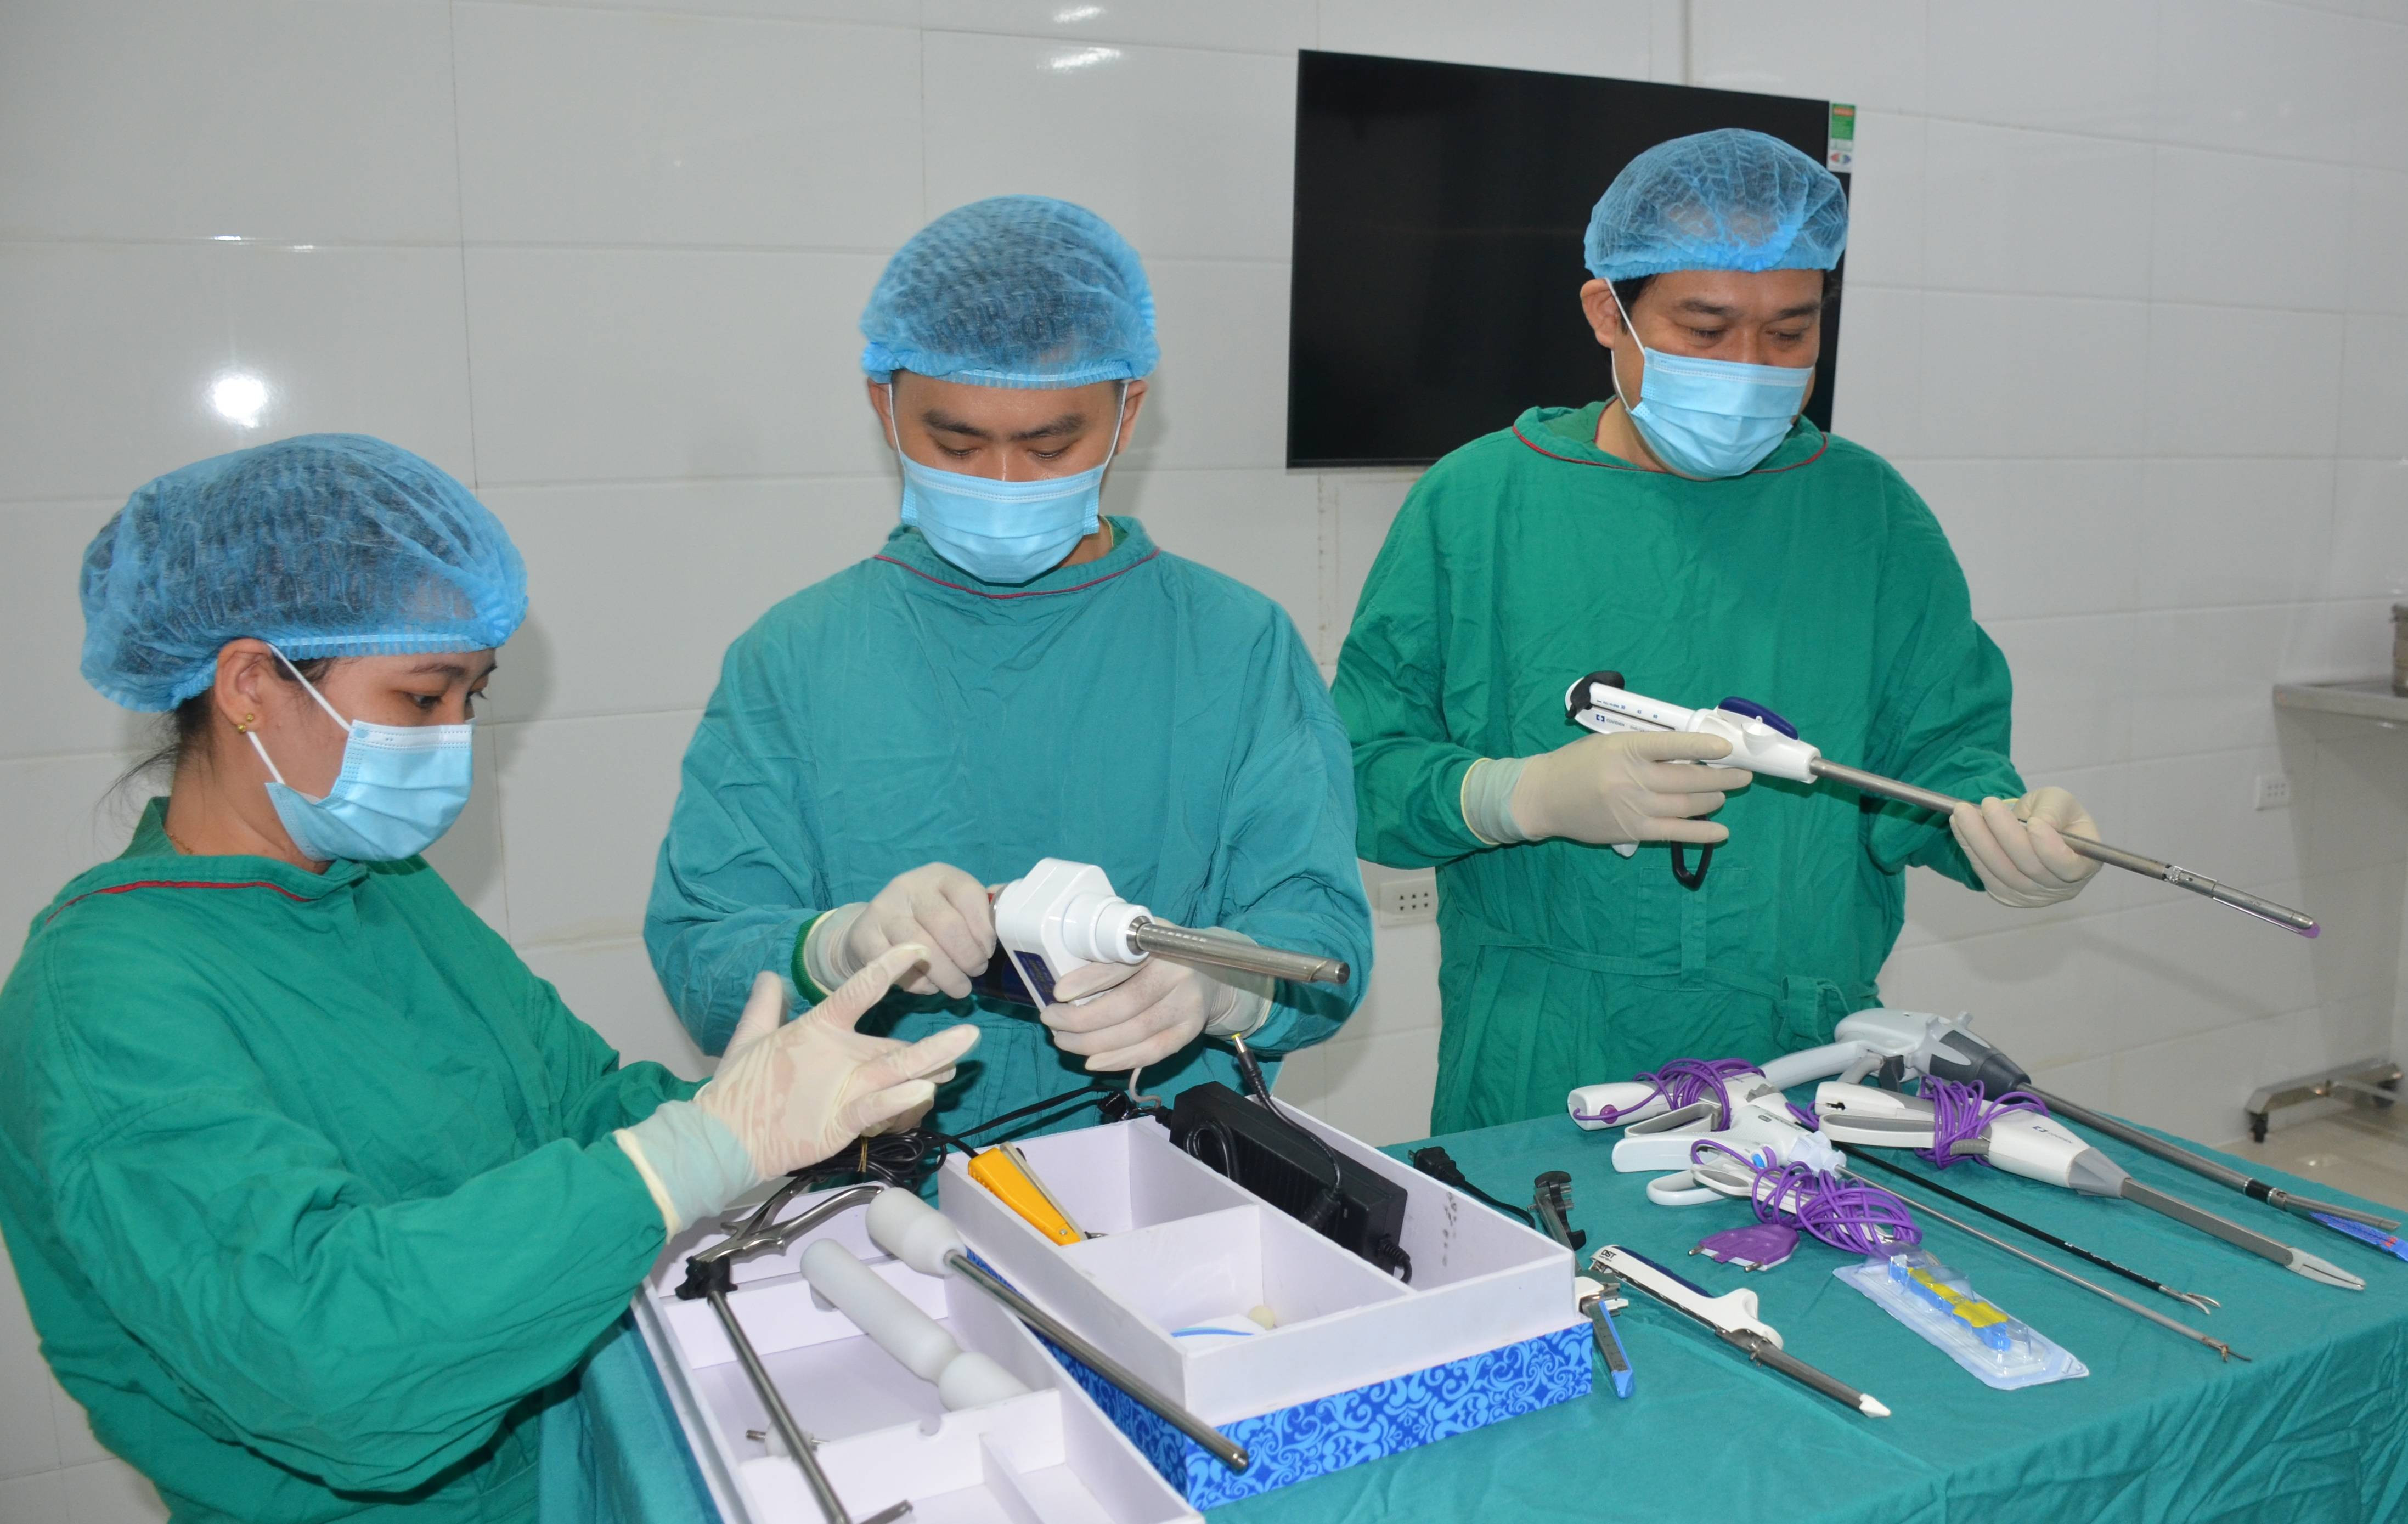 Bác sĩ Nguyễn Văn Khanh và các nhân viên phòng mổ chuẩn bị dụng cụ cho ca phẫu thuật nội soi cắt tử cung bán phần. Ảnh Thành Chung.jpg